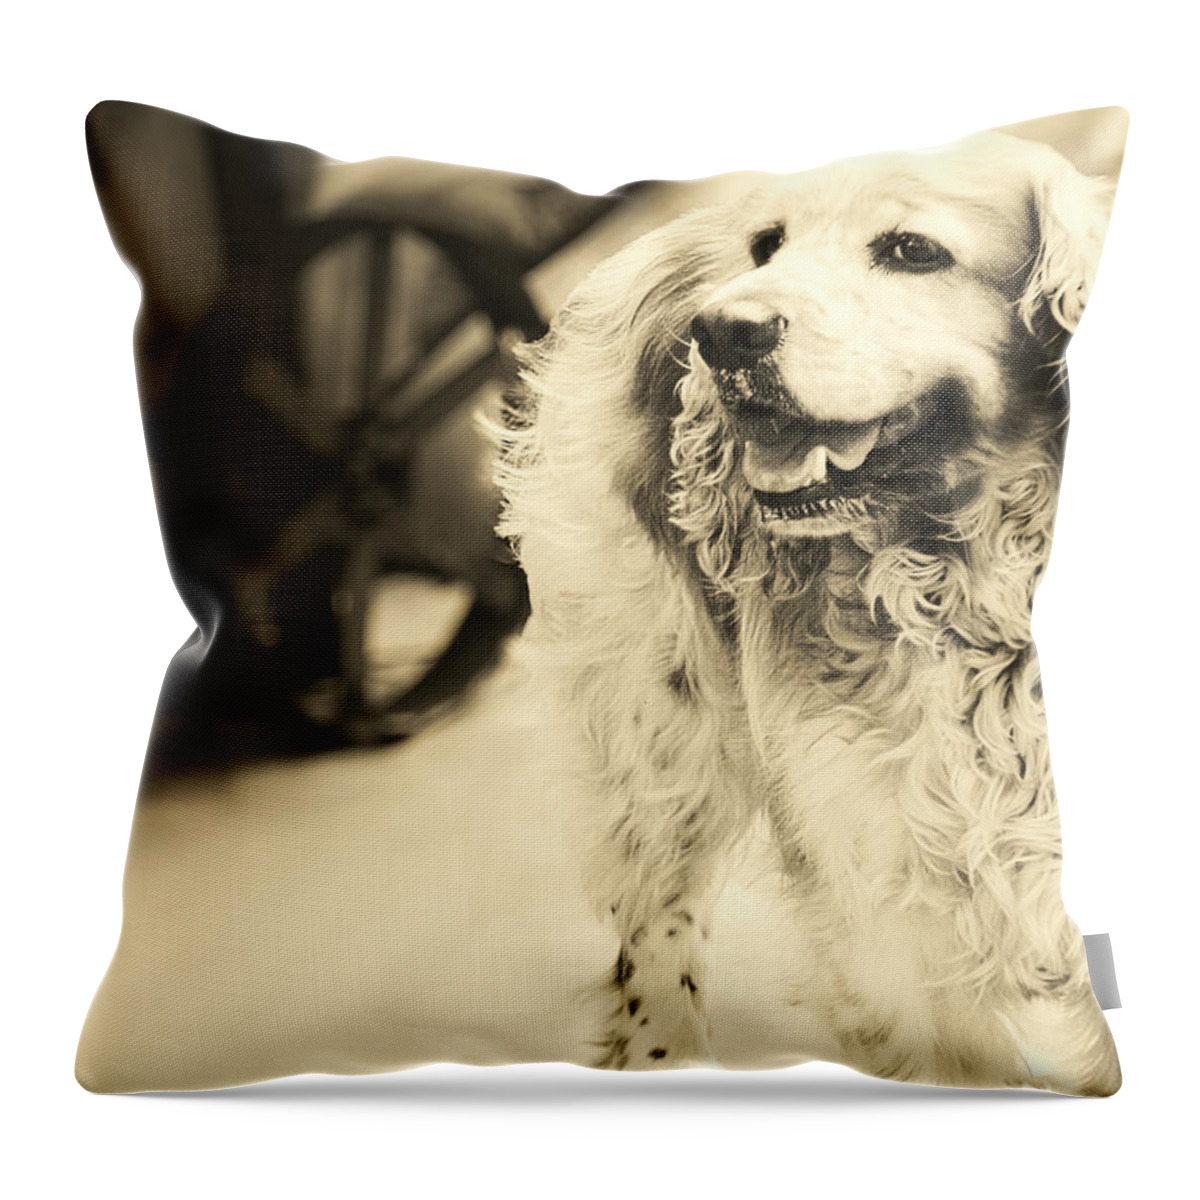 Art Throw Pillow featuring the digital art Saint Shaggy Art 10 by Miss Pet Sitter